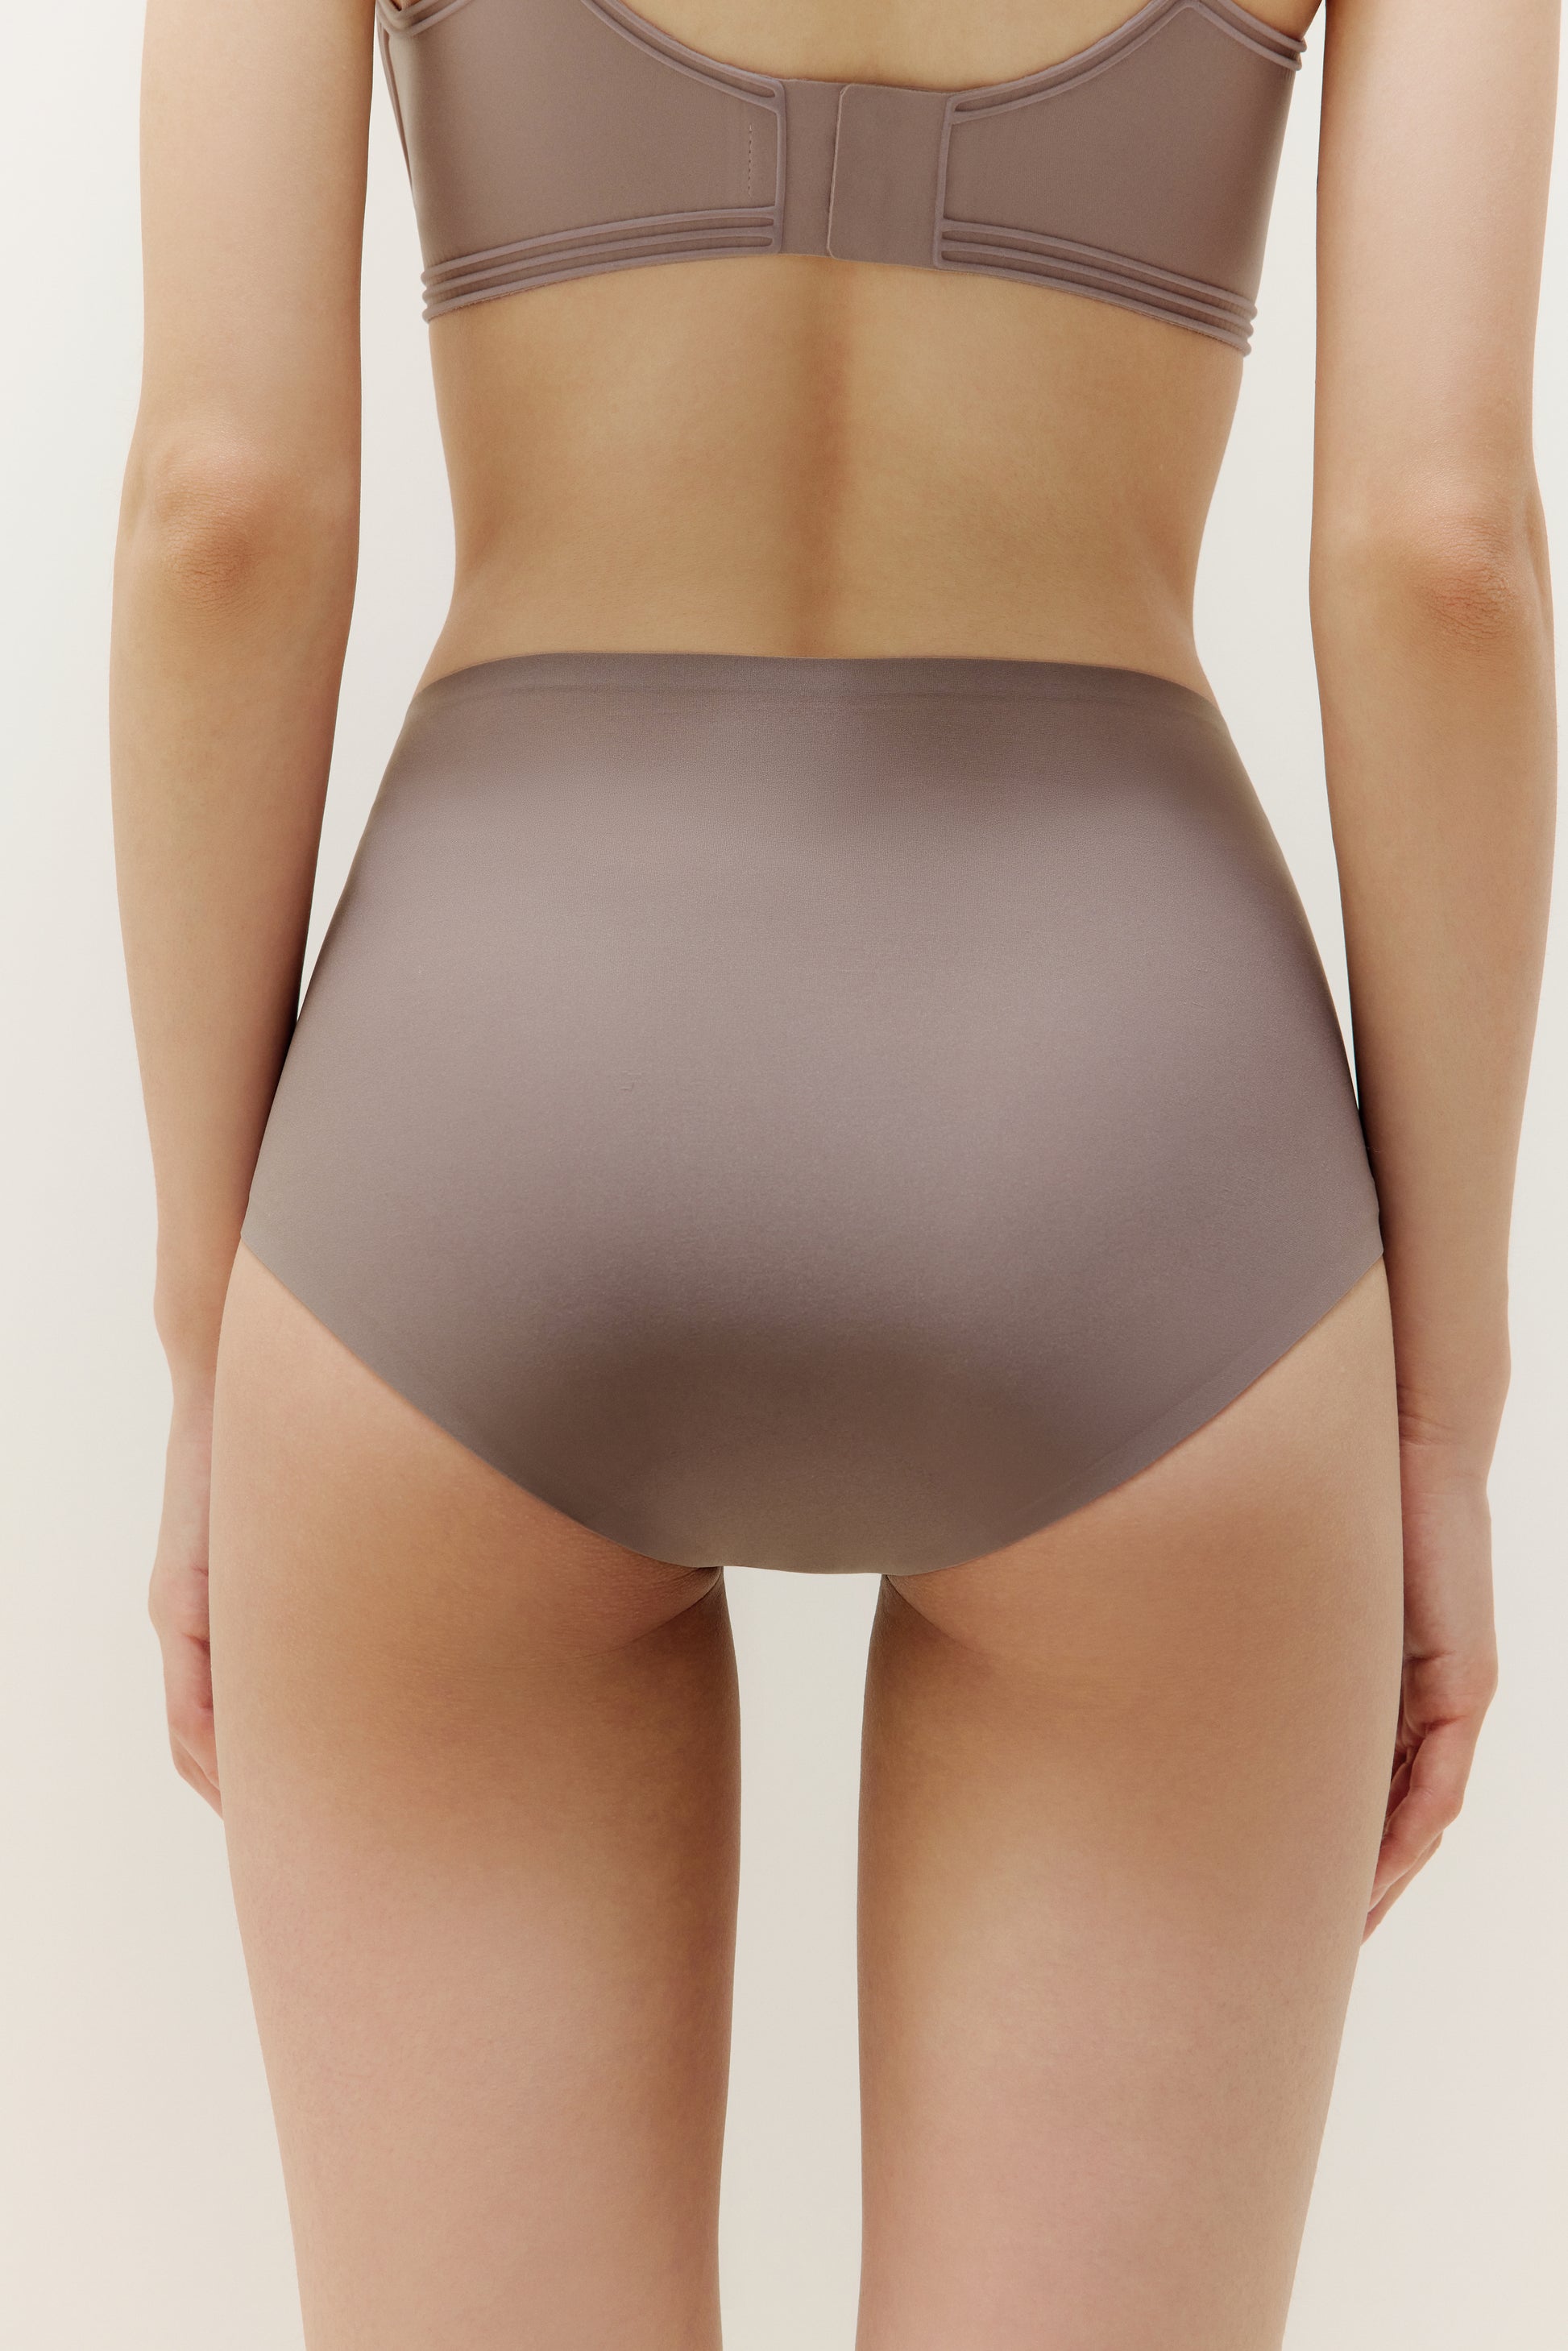 17 Color Deep Brown Sheer Nylon Panties Briefs High Waist -  Israel